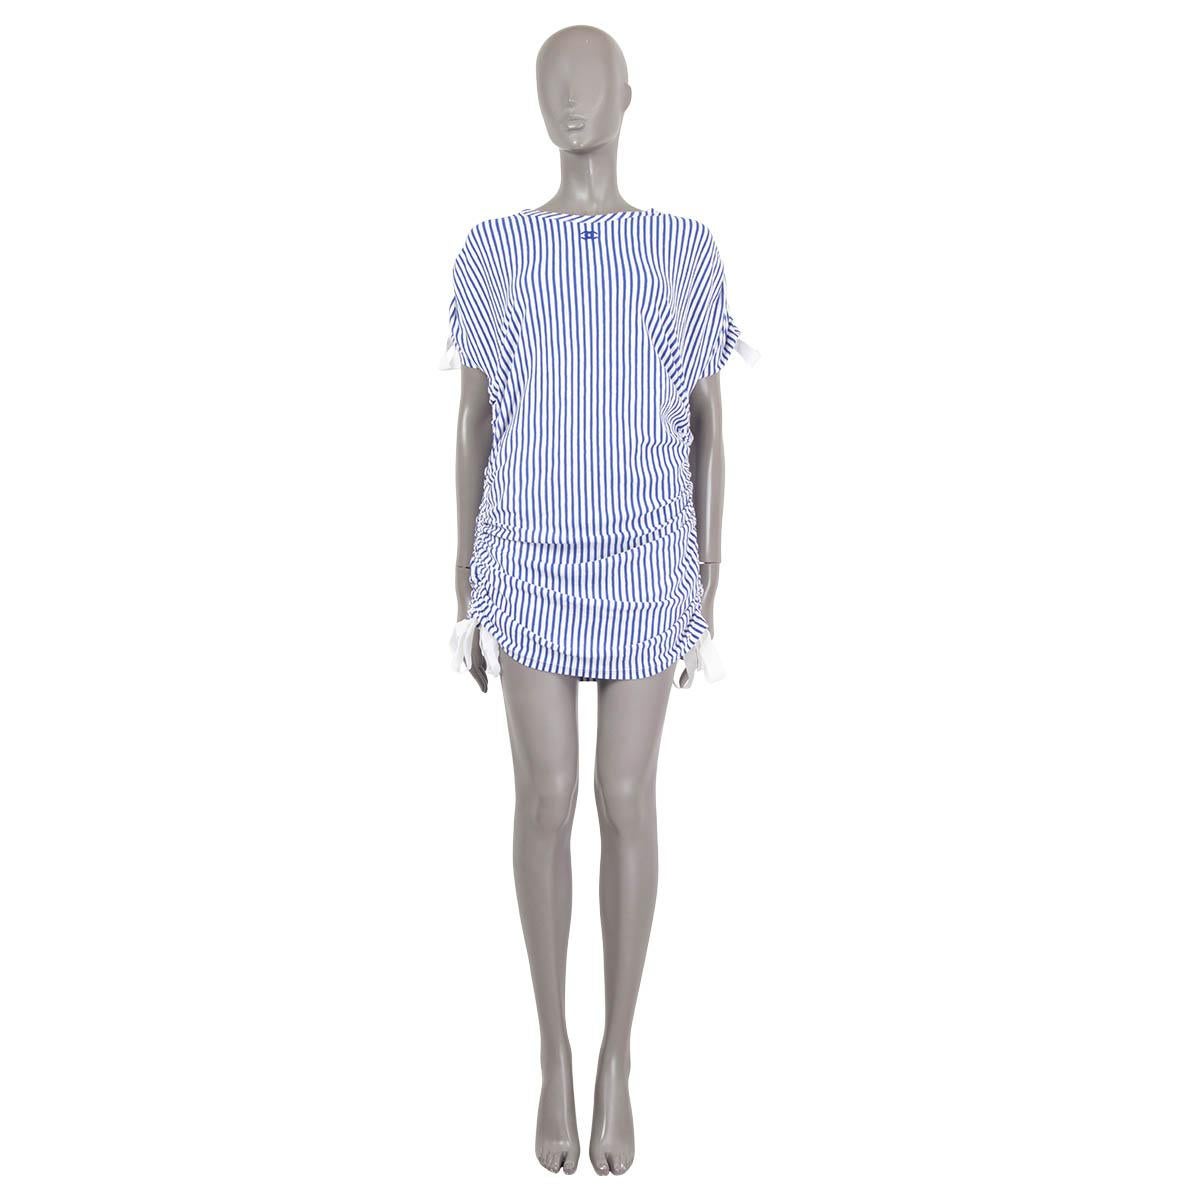 100% authentique robe à manches courtes de Chanel en coton (65%) et polyester (35%) rayé bleu et blanc. Il est doté d'un col ras du cou, d'une broderie CC sur le devant, de manches ajustables et d'une longueur de robe grâce à des liens. Non